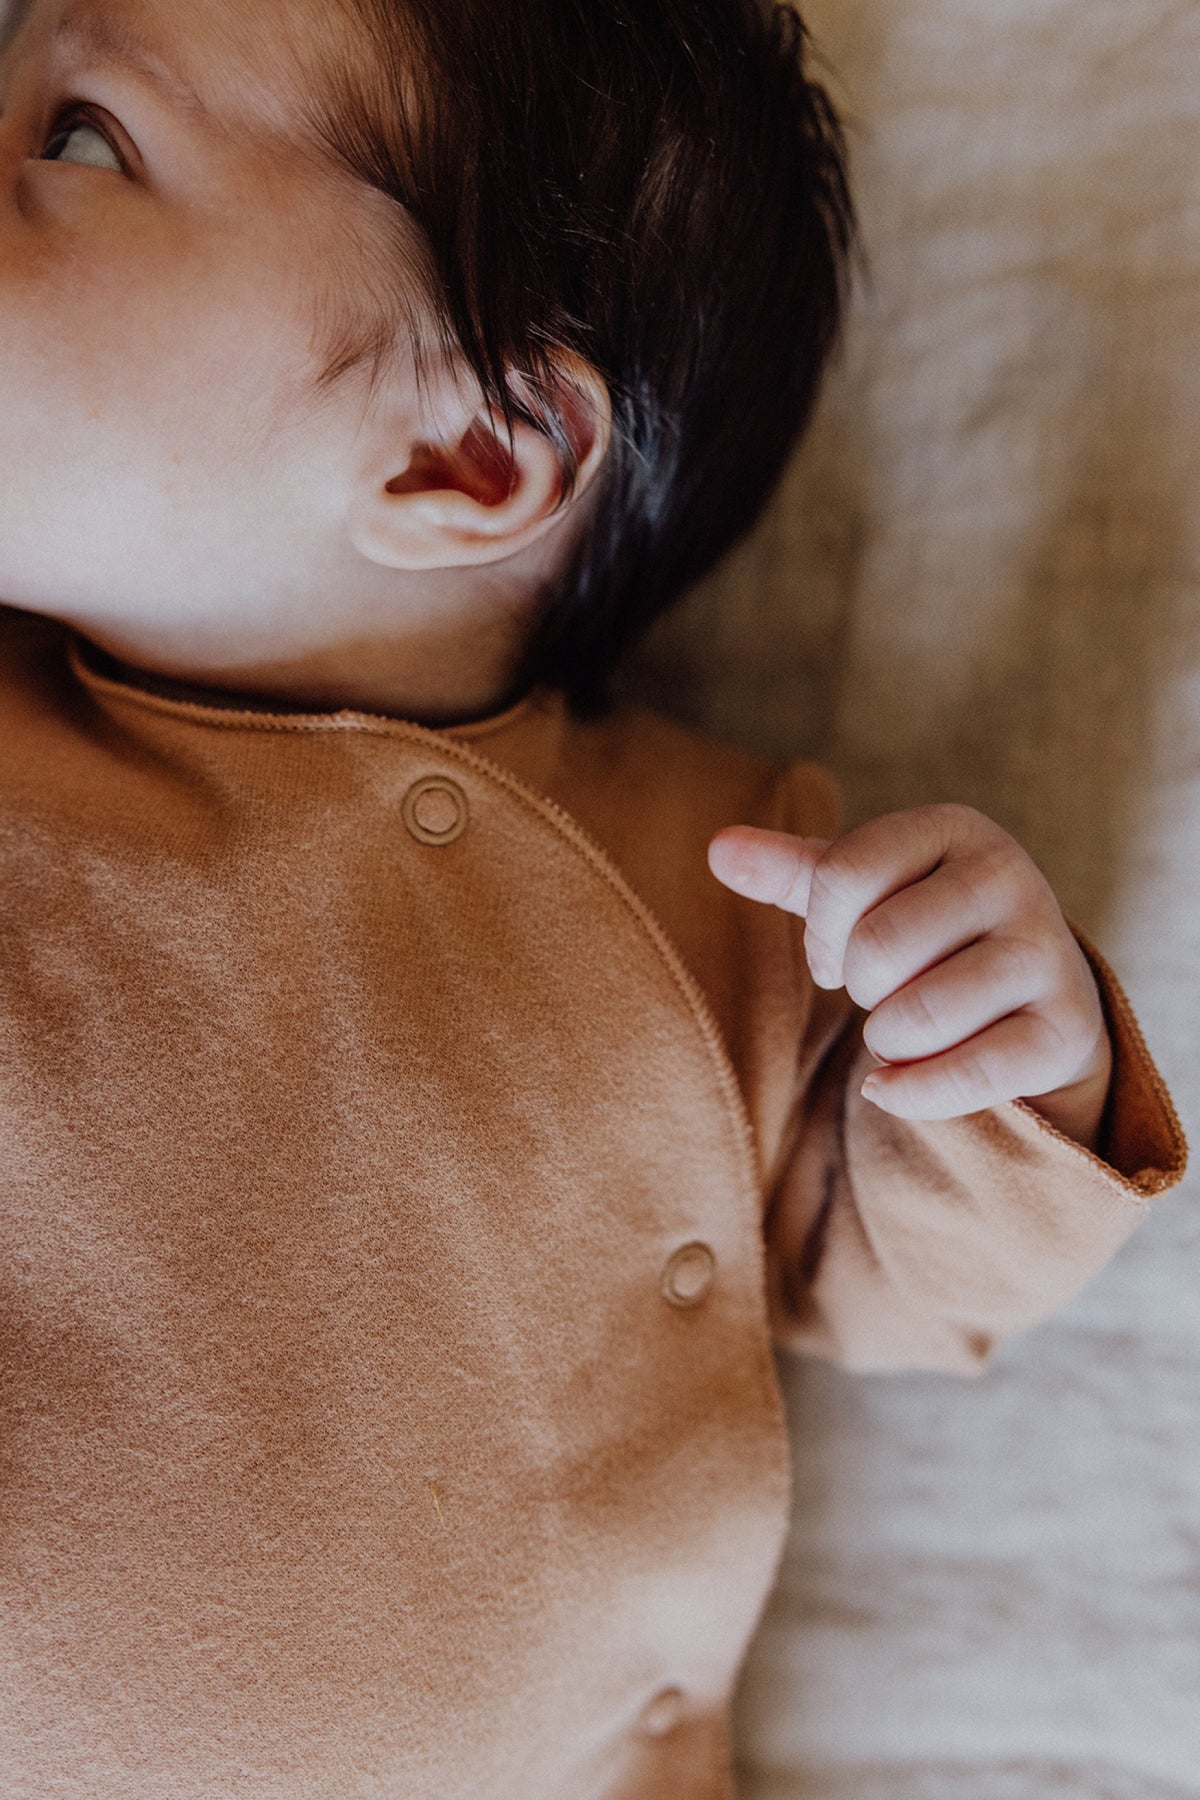 Baby Anzug mit Druckknöpfen | Biscuit